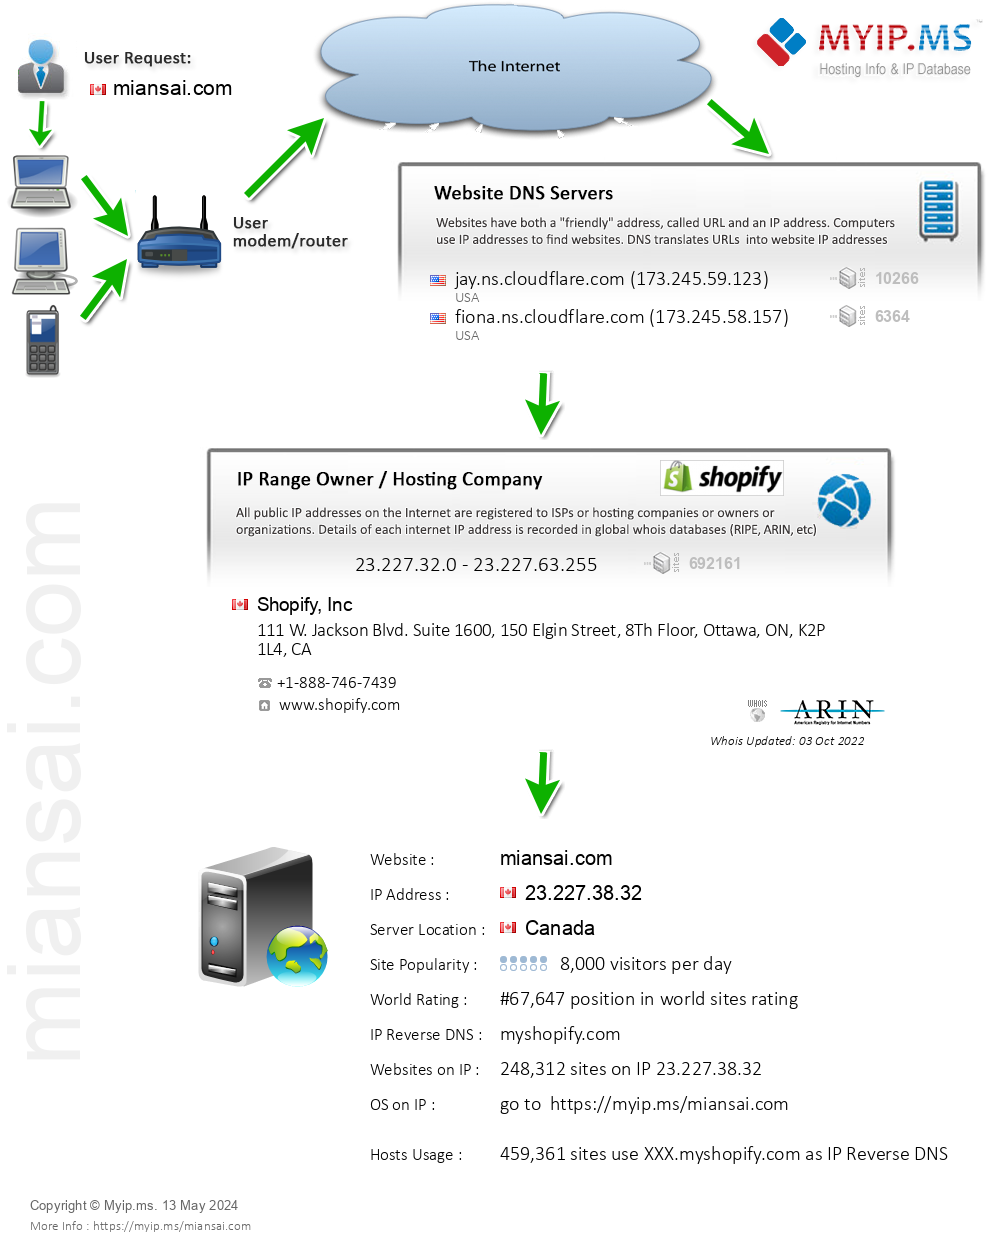 Miansai.com - Website Hosting Visual IP Diagram